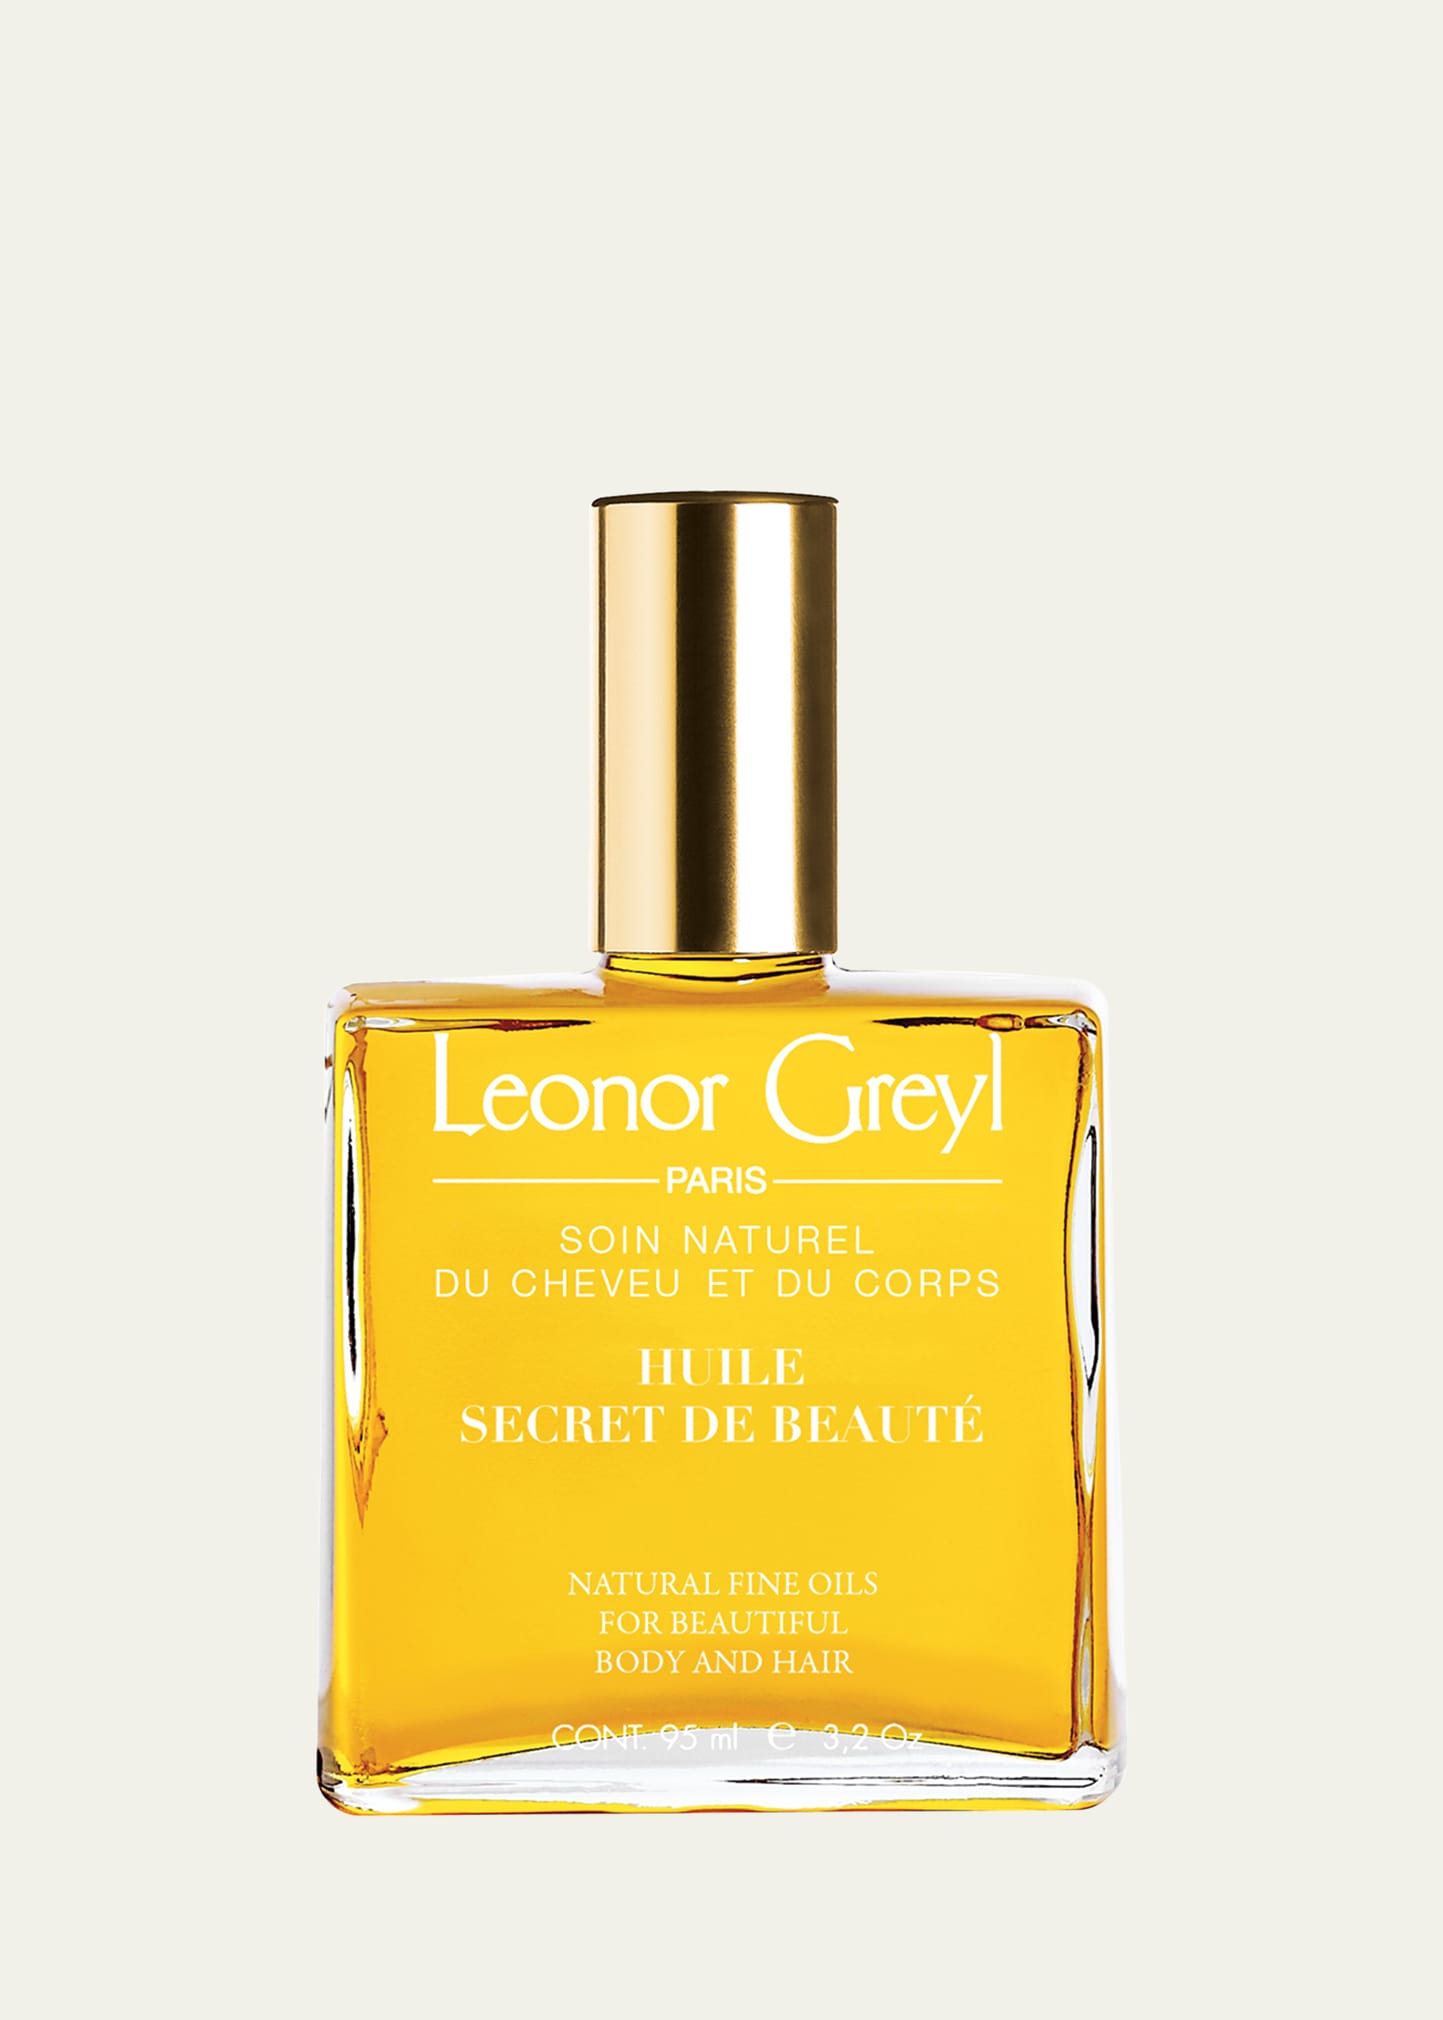 Huile Secret de Beaute (Hair & Body Oil),3.2 oz./ 59 mL